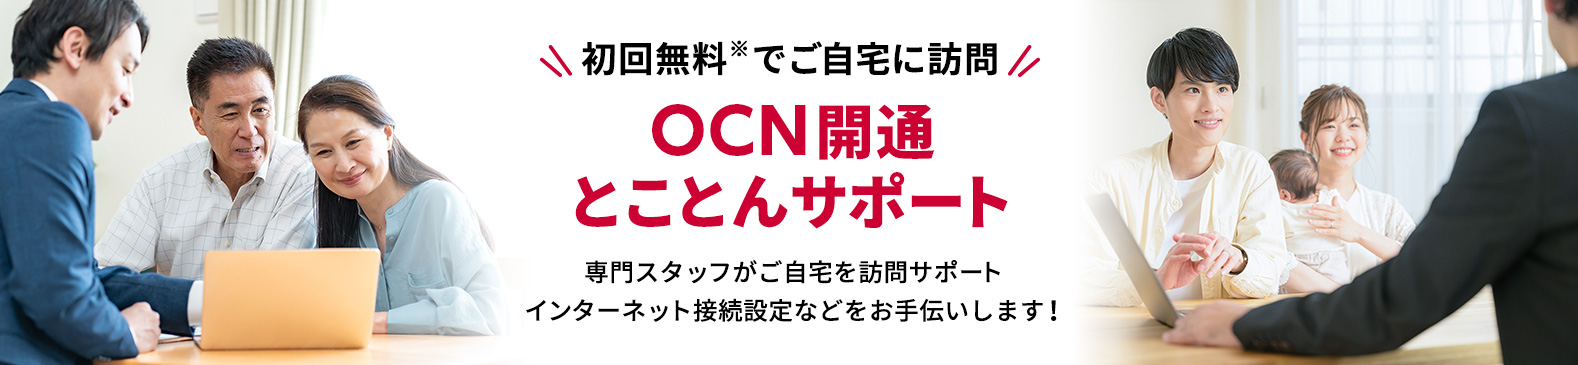 OCN開通とことんサポート